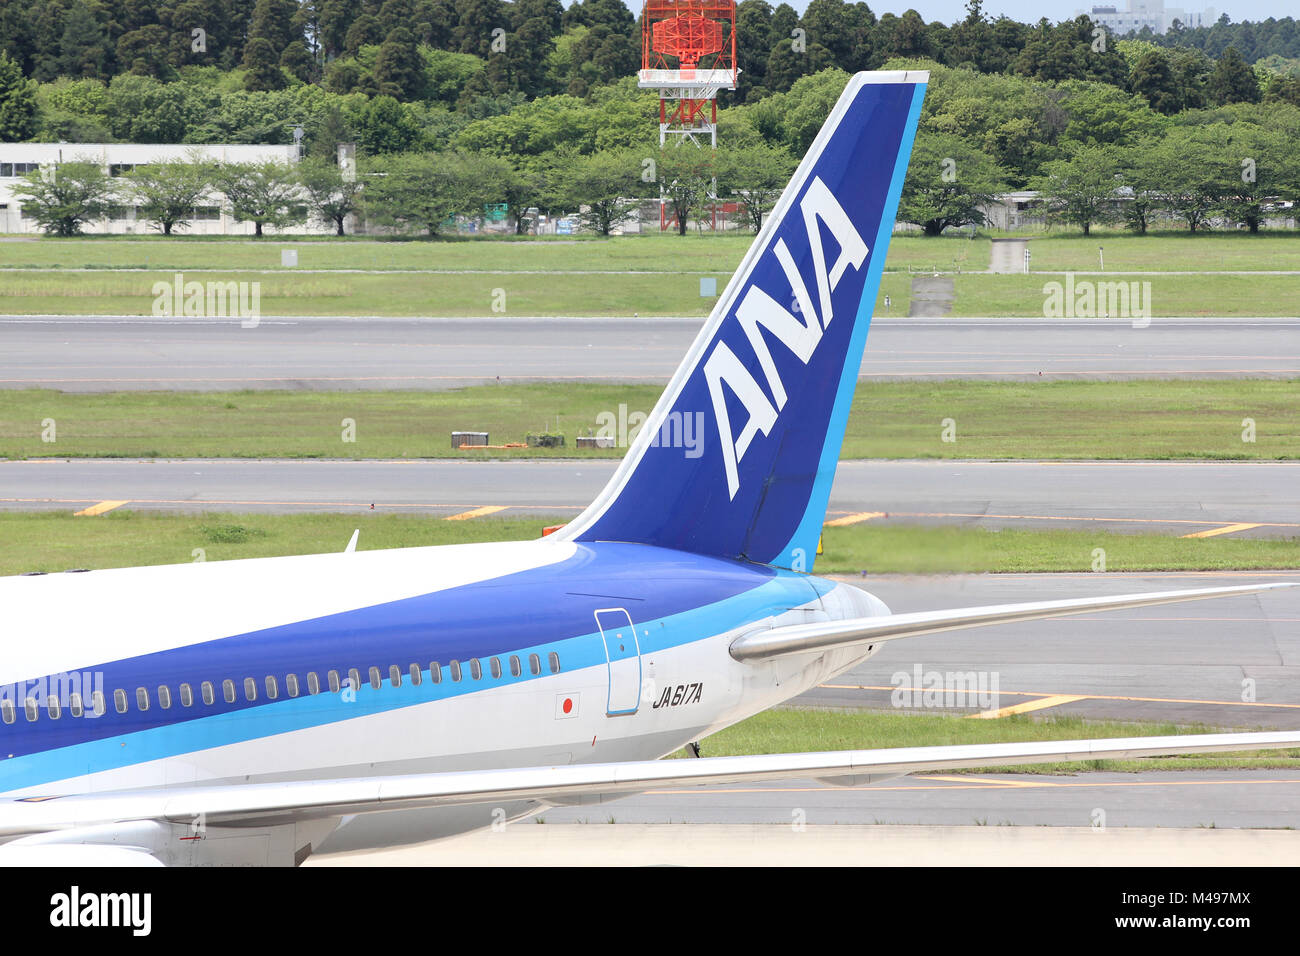 TOKYO - 12 Maggio: All Nippon Airways (ANA) Boeing 767 il 12 maggio 2012 all'Aeroporto Internazionale Narita di Tokyo. ANA è una delle più grandi compagnie aeree del Giappone wi Foto Stock